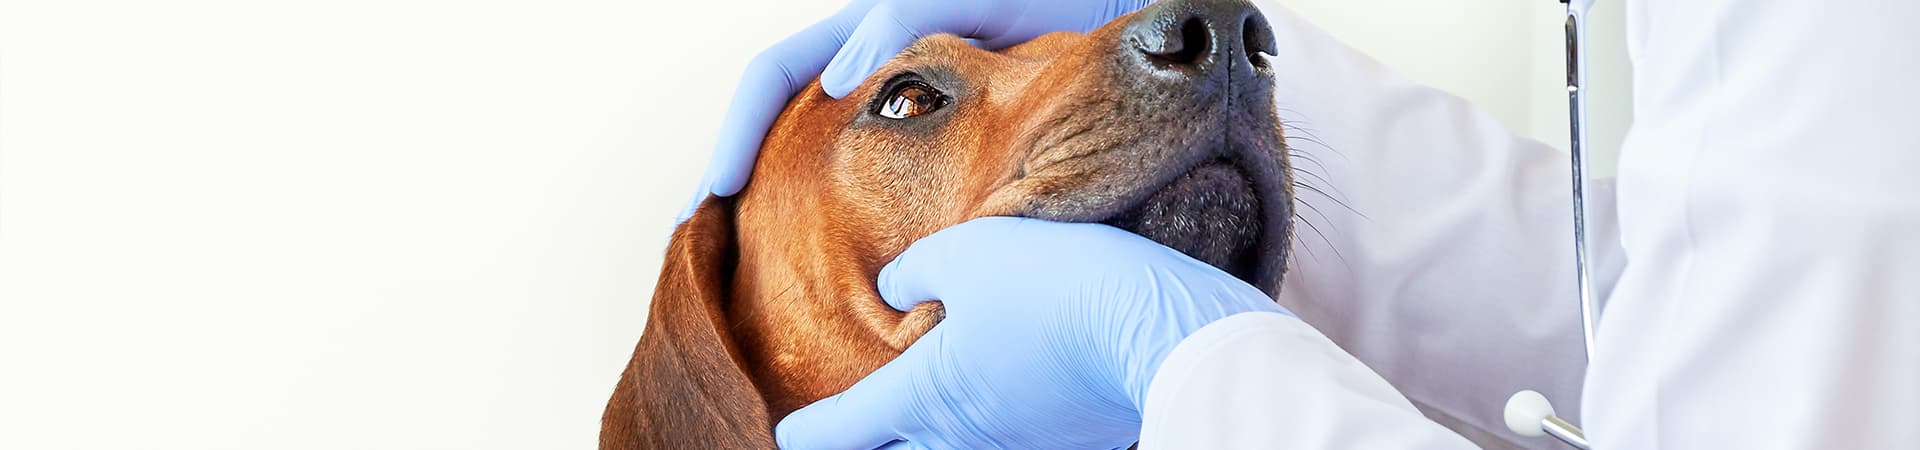 Tierarzt untersucht die Augen eines Hundes